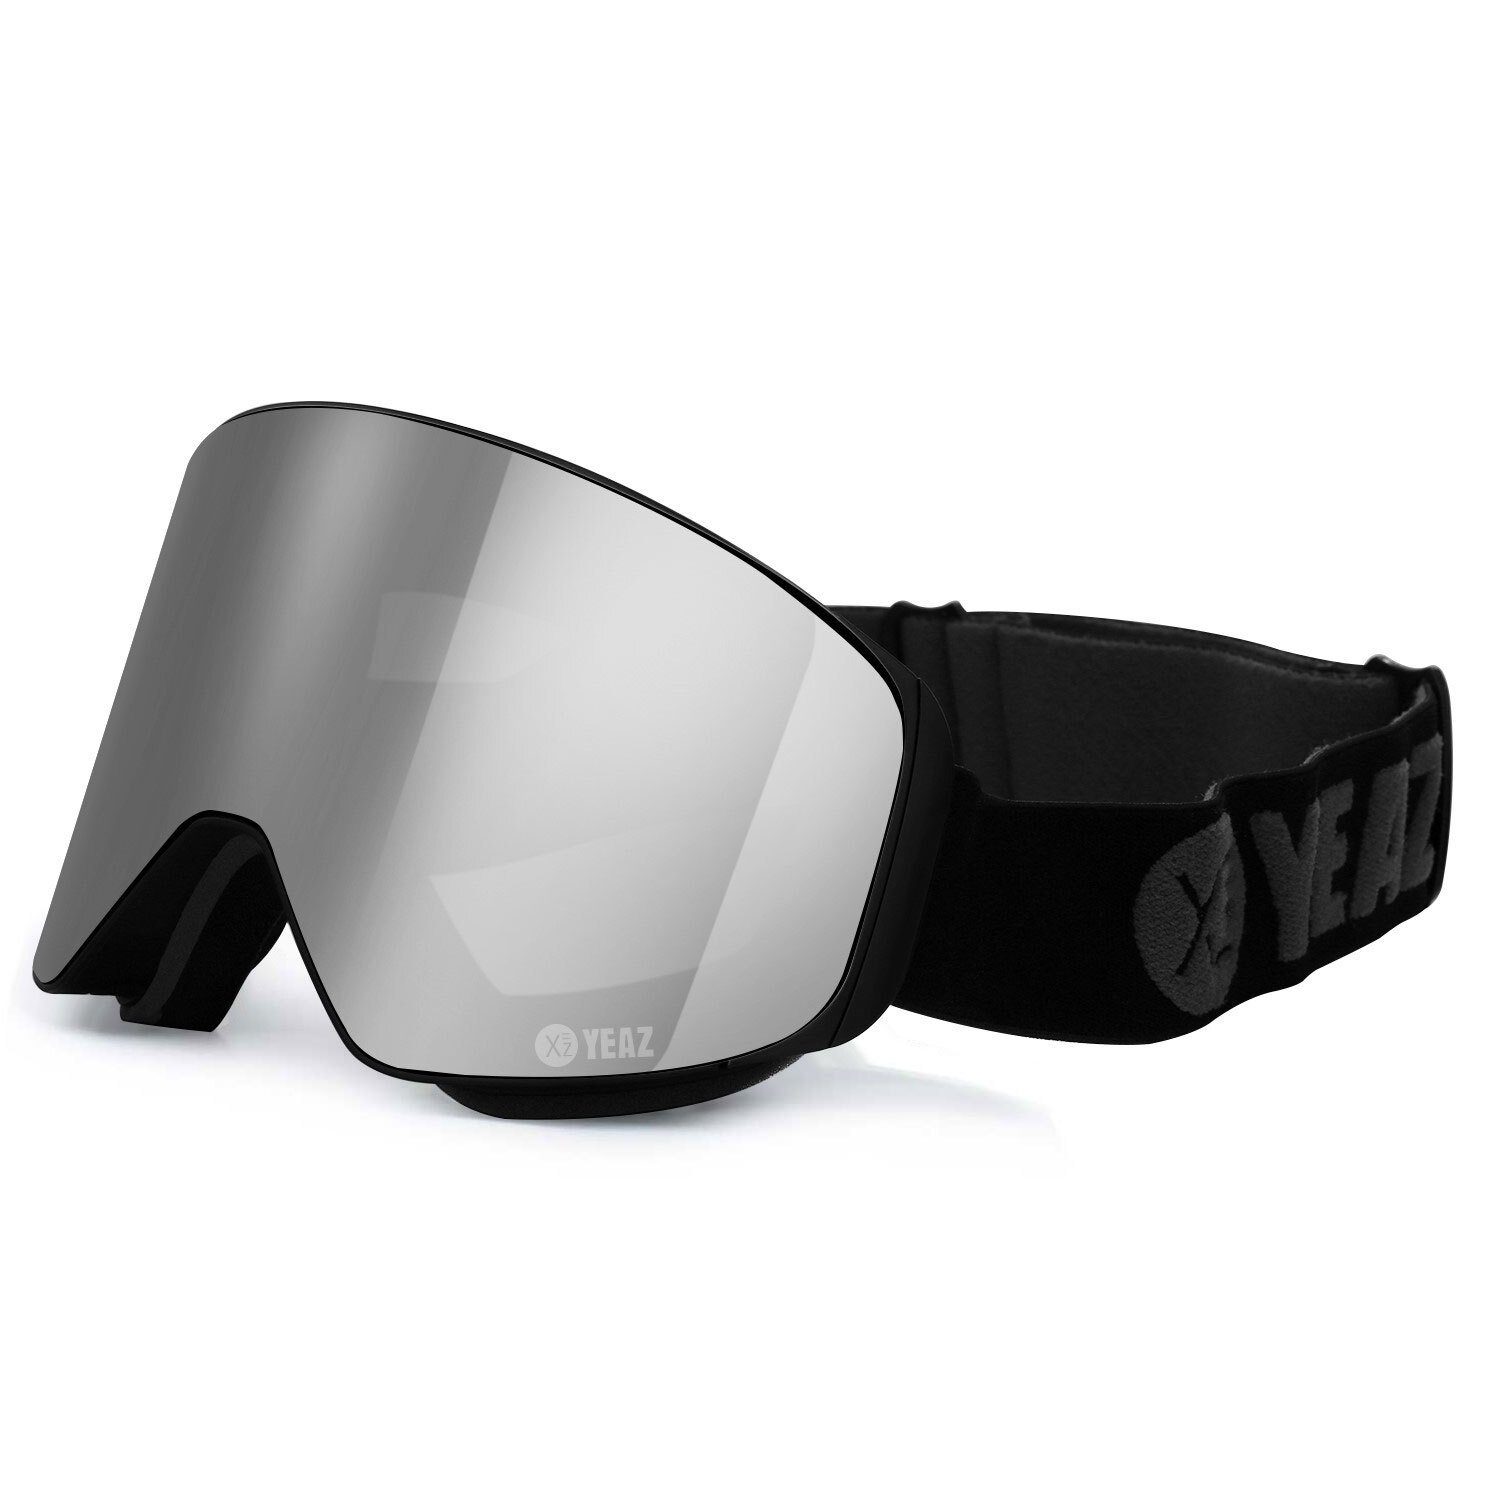 YEAZ für Skibrille APEX, silber/schwarz Gläser, Magnet-Wechsel-System